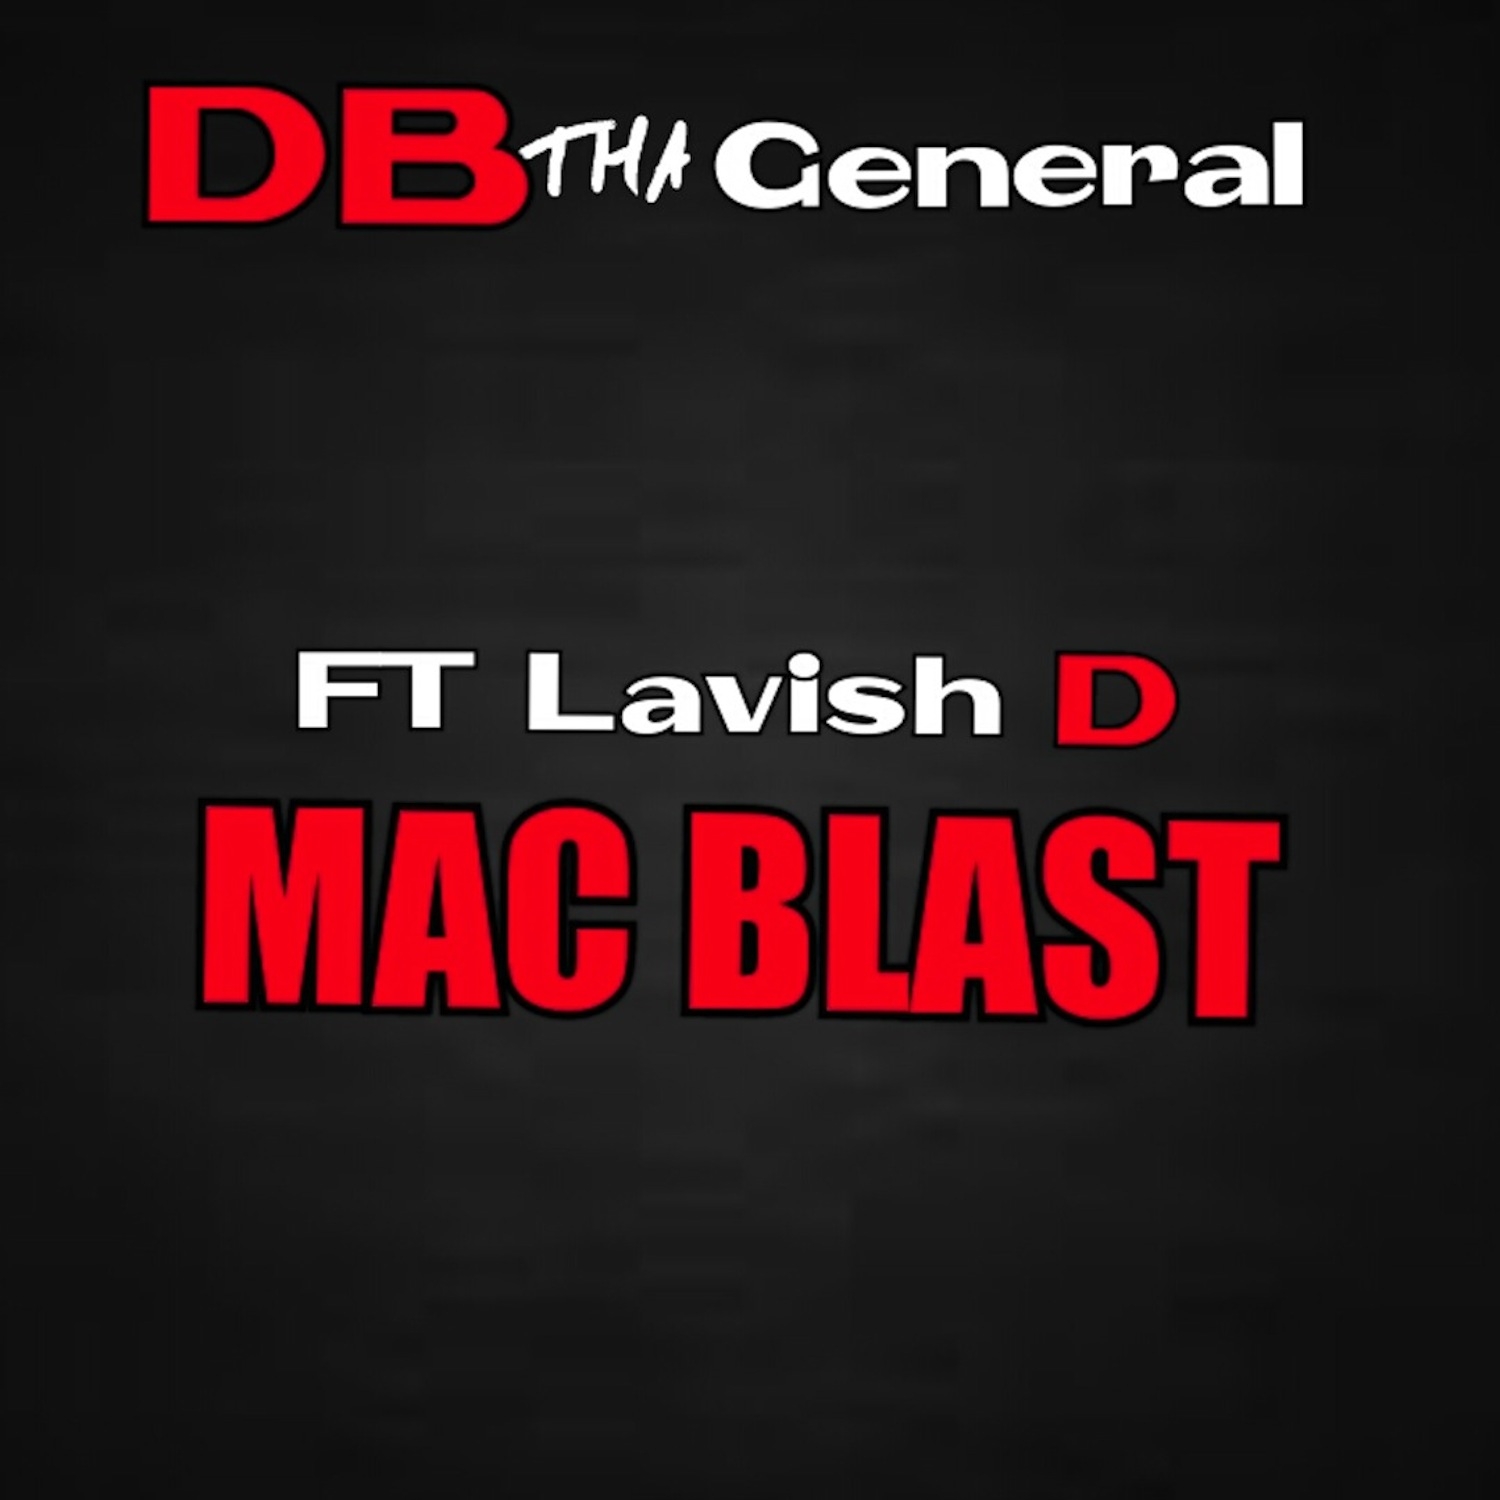 Mac Blast